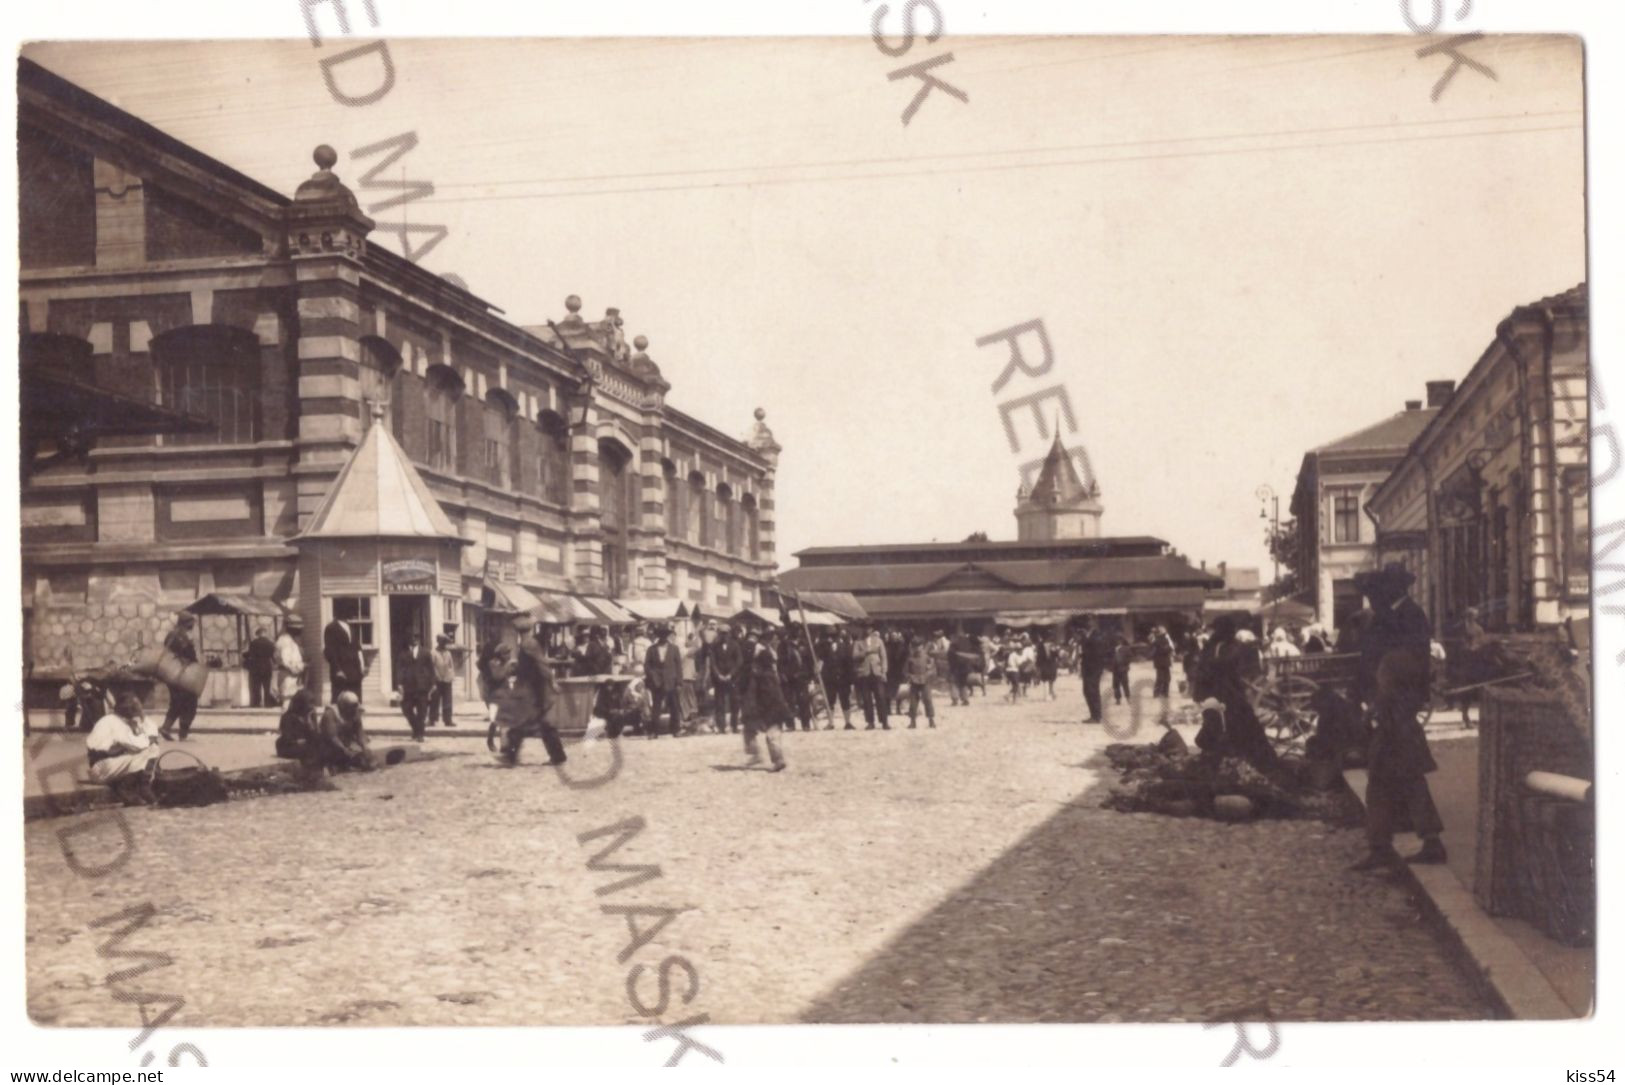 RO 91 - 20707 TURNU-SEVERIN, Market, Romania - Old Postcard, Real Photo - Unused - Roumanie